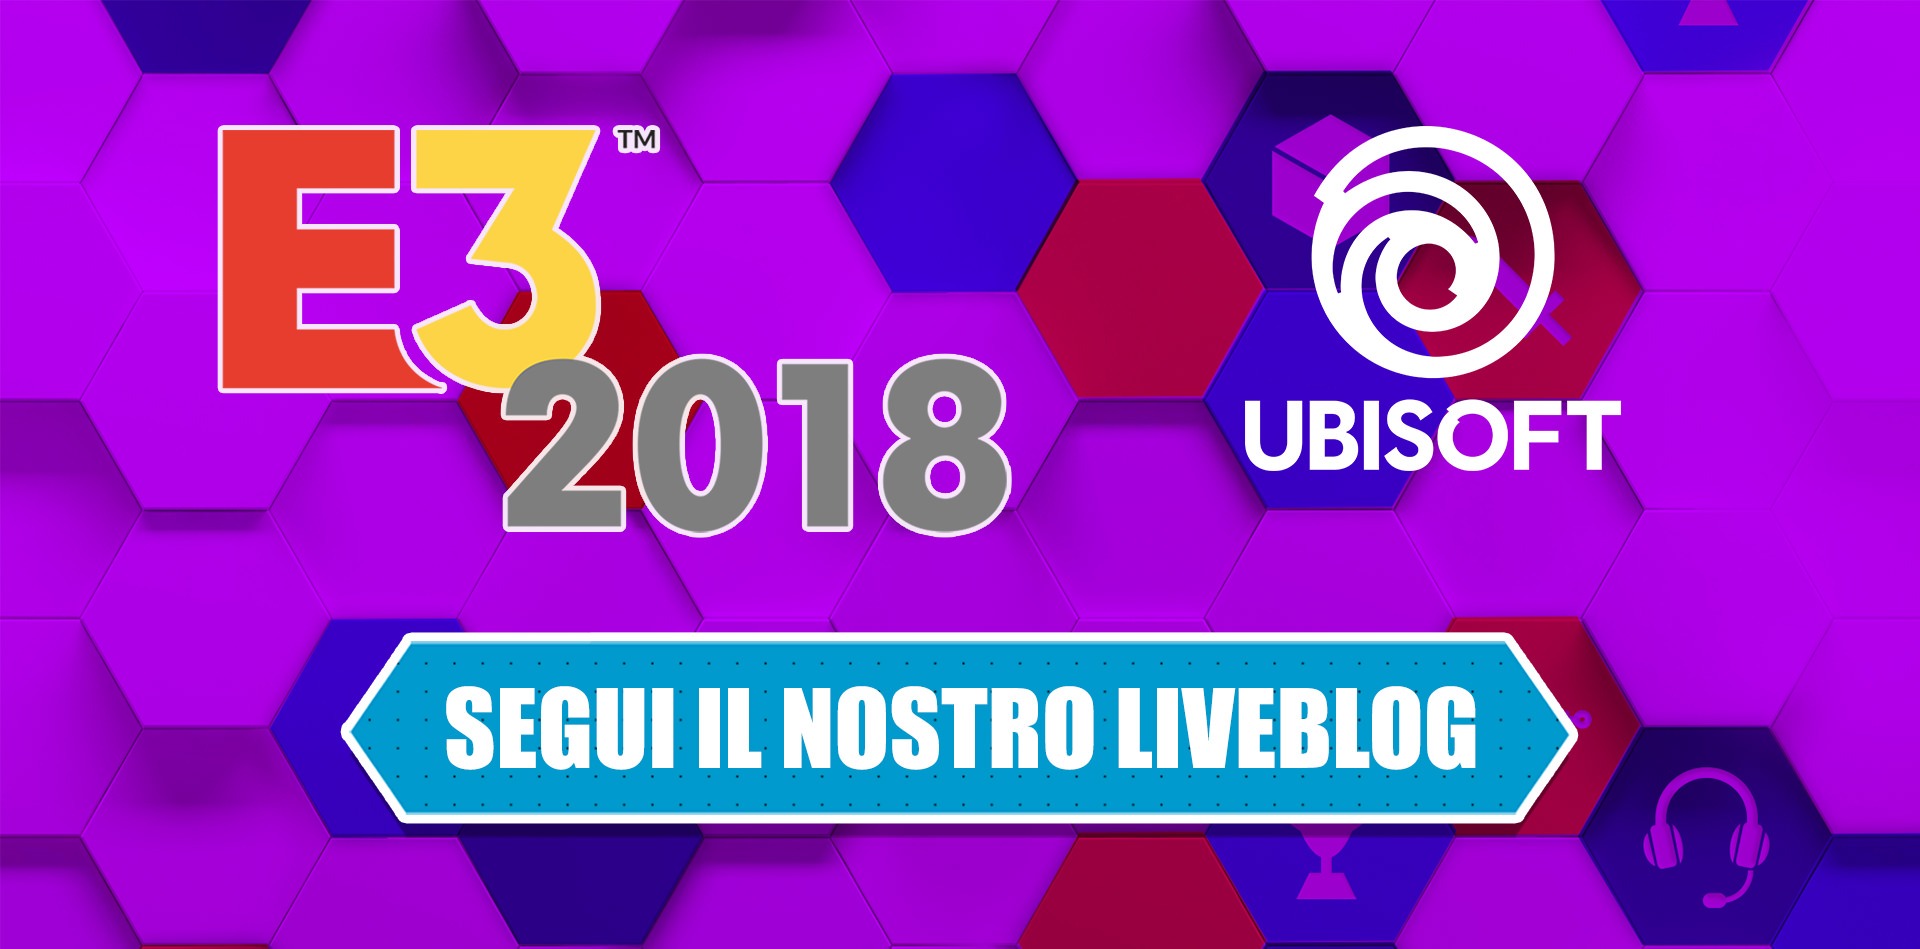 E3 2018: segui il liveblog della conferenza Ubisoft l'11 giugno dalle 22.00